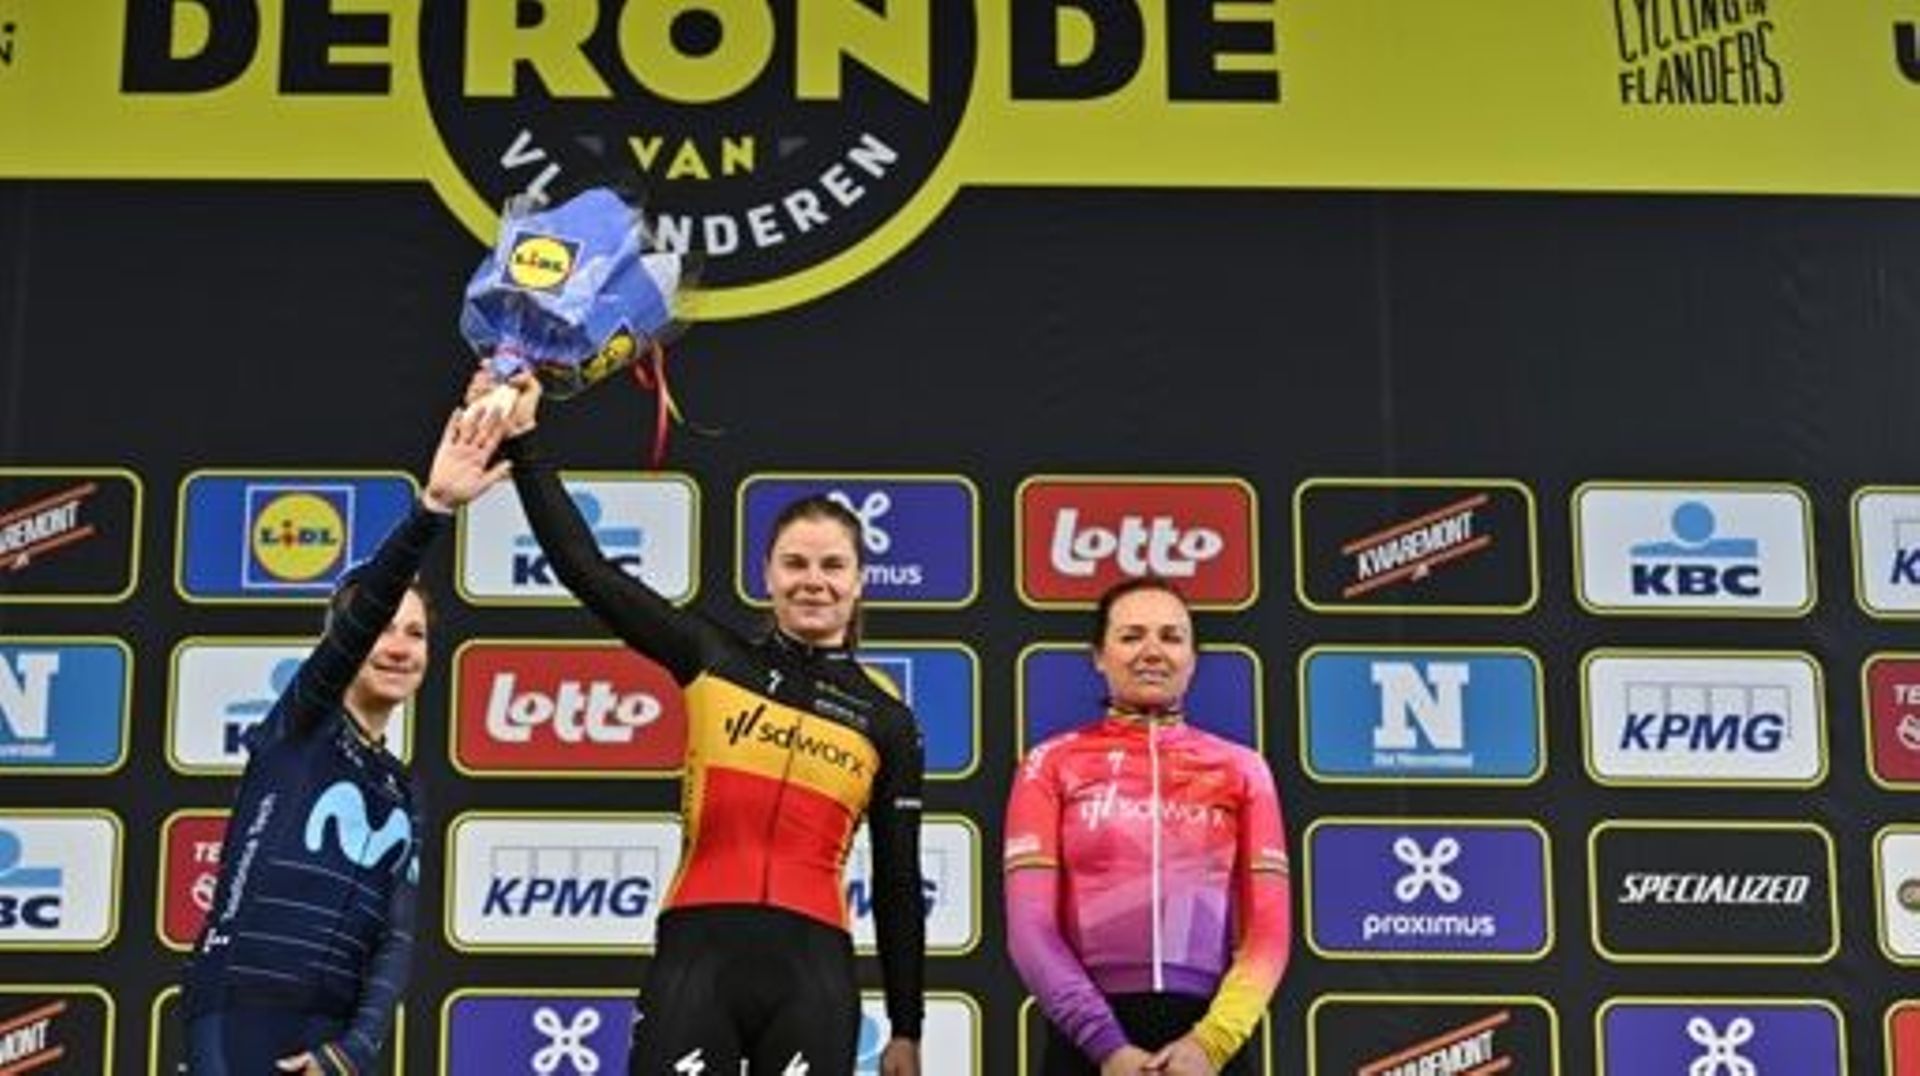 Dutch Annemiek van Vleuten of Movistar Team, Belgian Lotte Kopecky of SD Worx and Dutch Chantal van den Broek-Blaak of SD Worx pictured on the podium after the women’s race of the 'Ronde van Vlaanderen – Tour des Flandres – Tour of Flanders' one day cycli